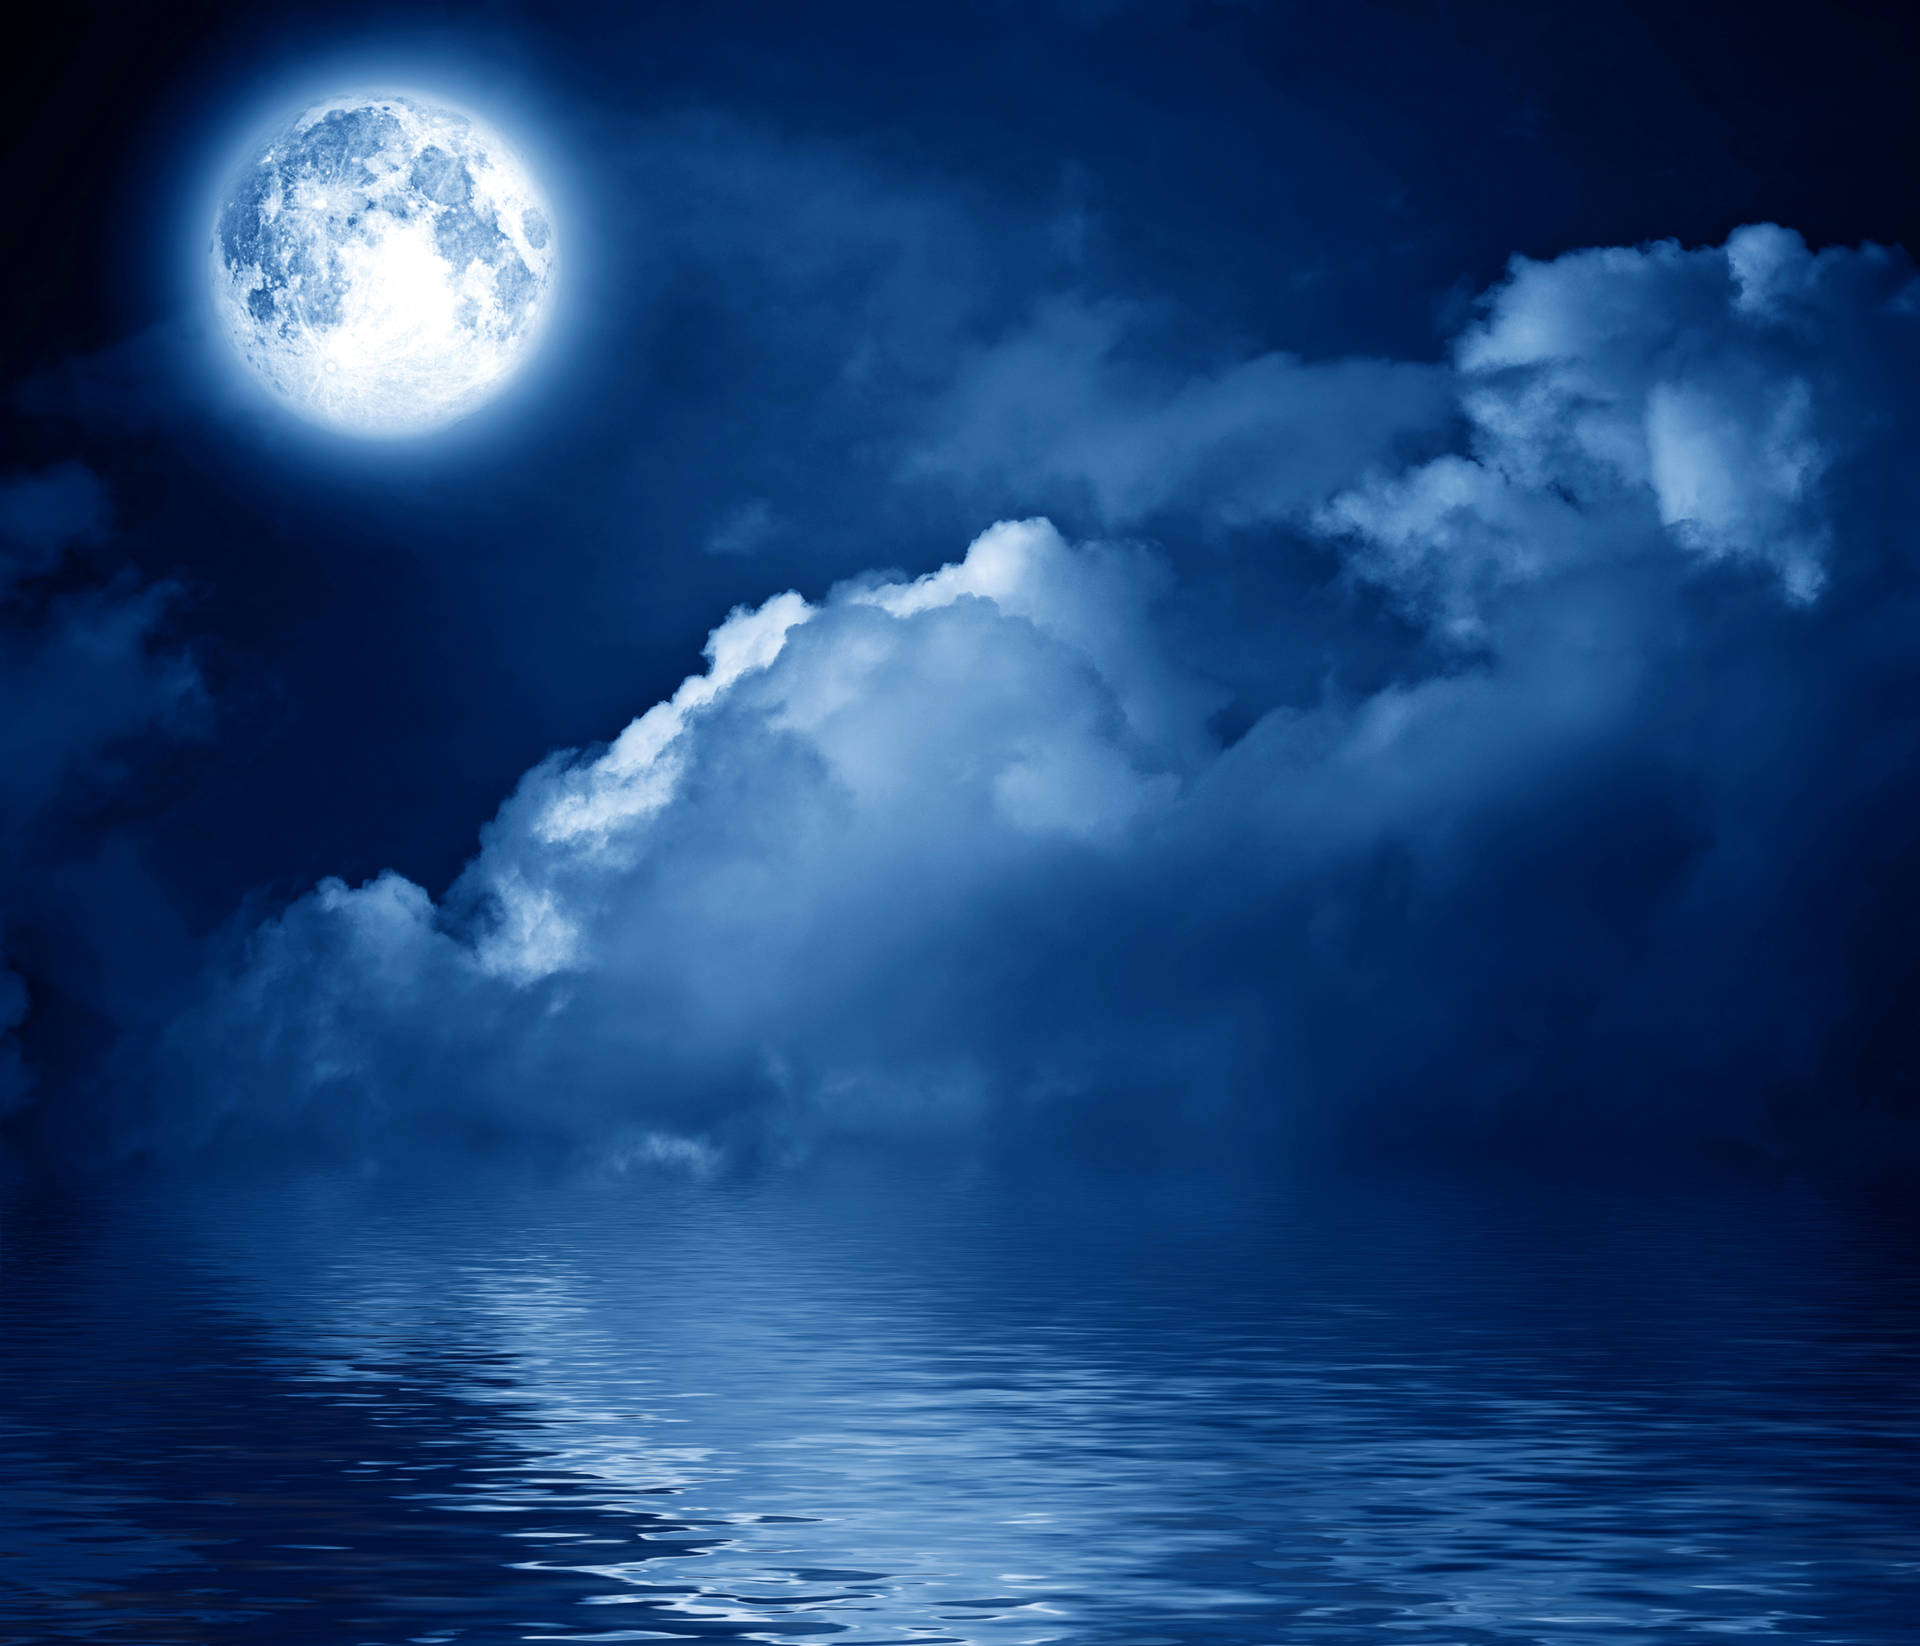 Cielonocturno De La Luna Con Nubes Bajas Fondo de pantalla